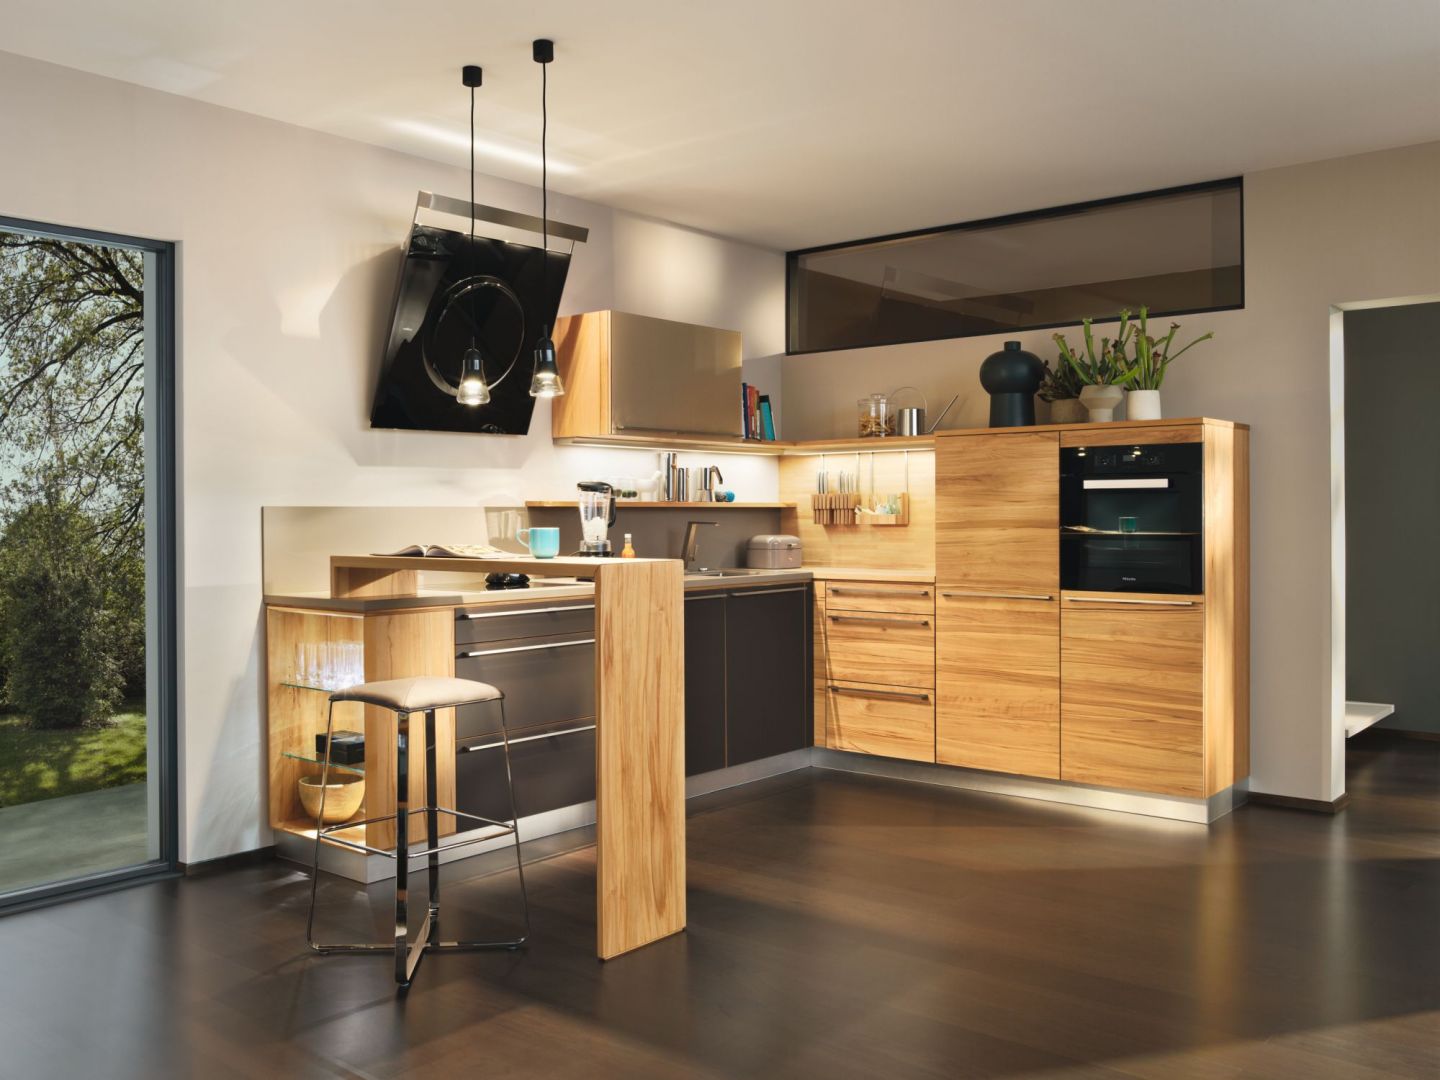 Ciepło wnętrza kuchennego zapewnią odpowiednio dobrane materiały. Przytulne drewno w połączeniu z barwą stonowanego brązu nadaje wnętrzu szlachetnej elegancji. Fot. Team7 